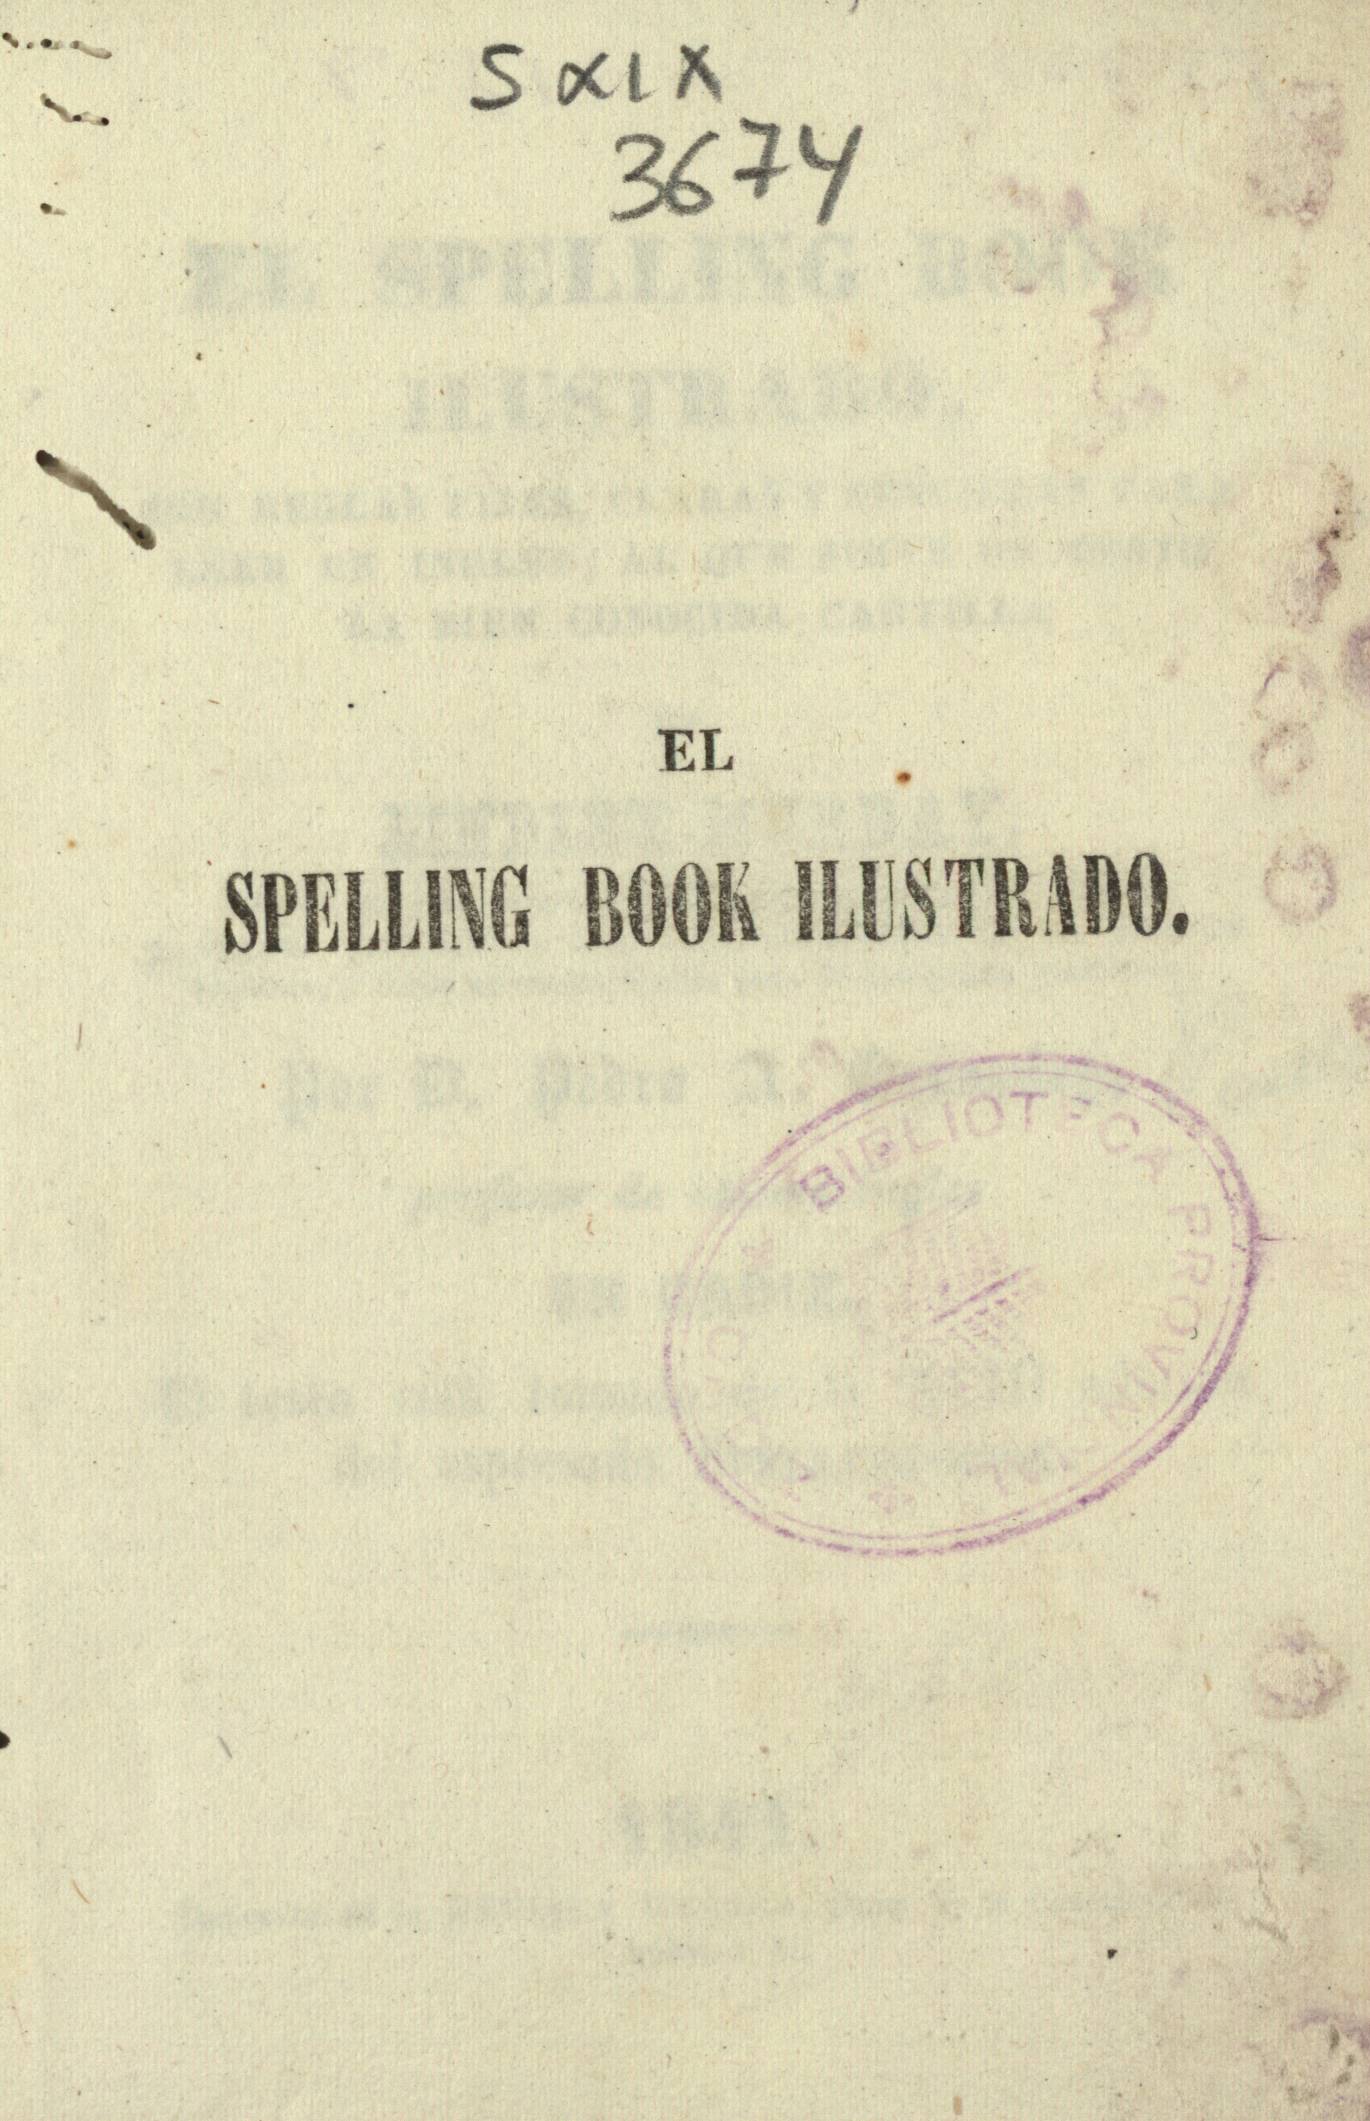 El spelling book ilustrado